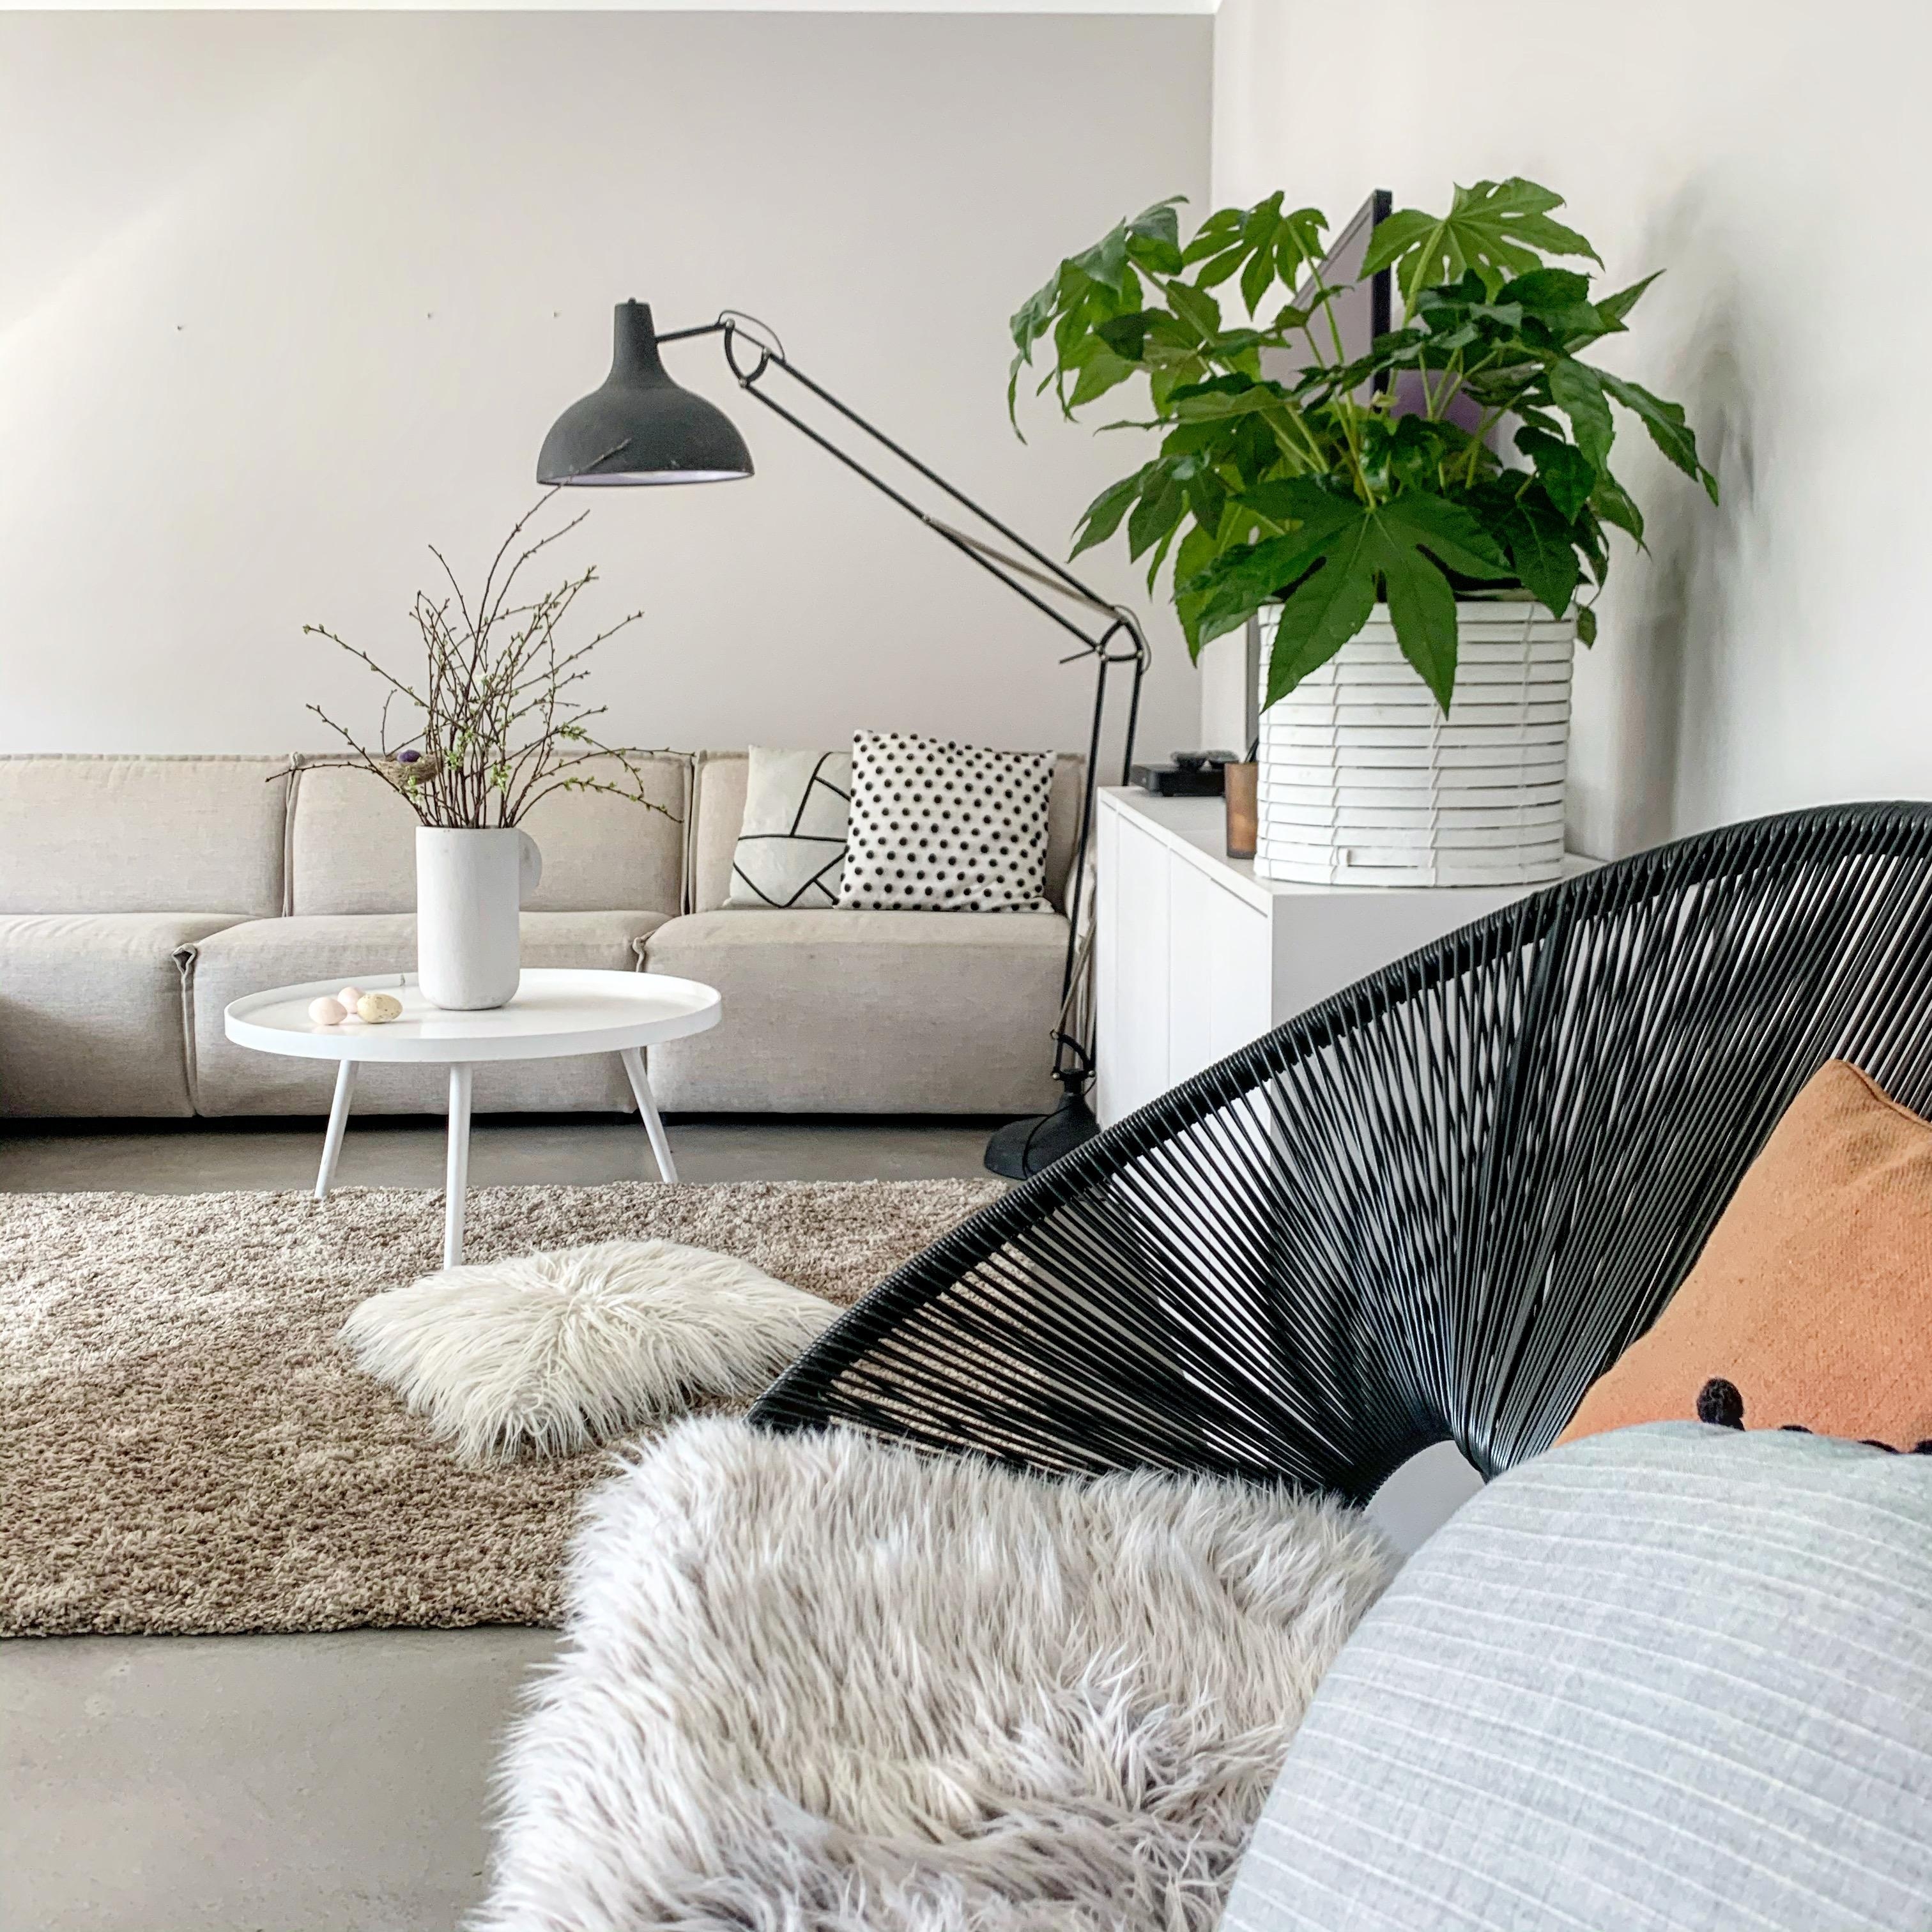 Hallo aus dem Wohnzimmer🙋🏻‍♀️ #wohnzimmer #hygge #couchstyle #whitehome